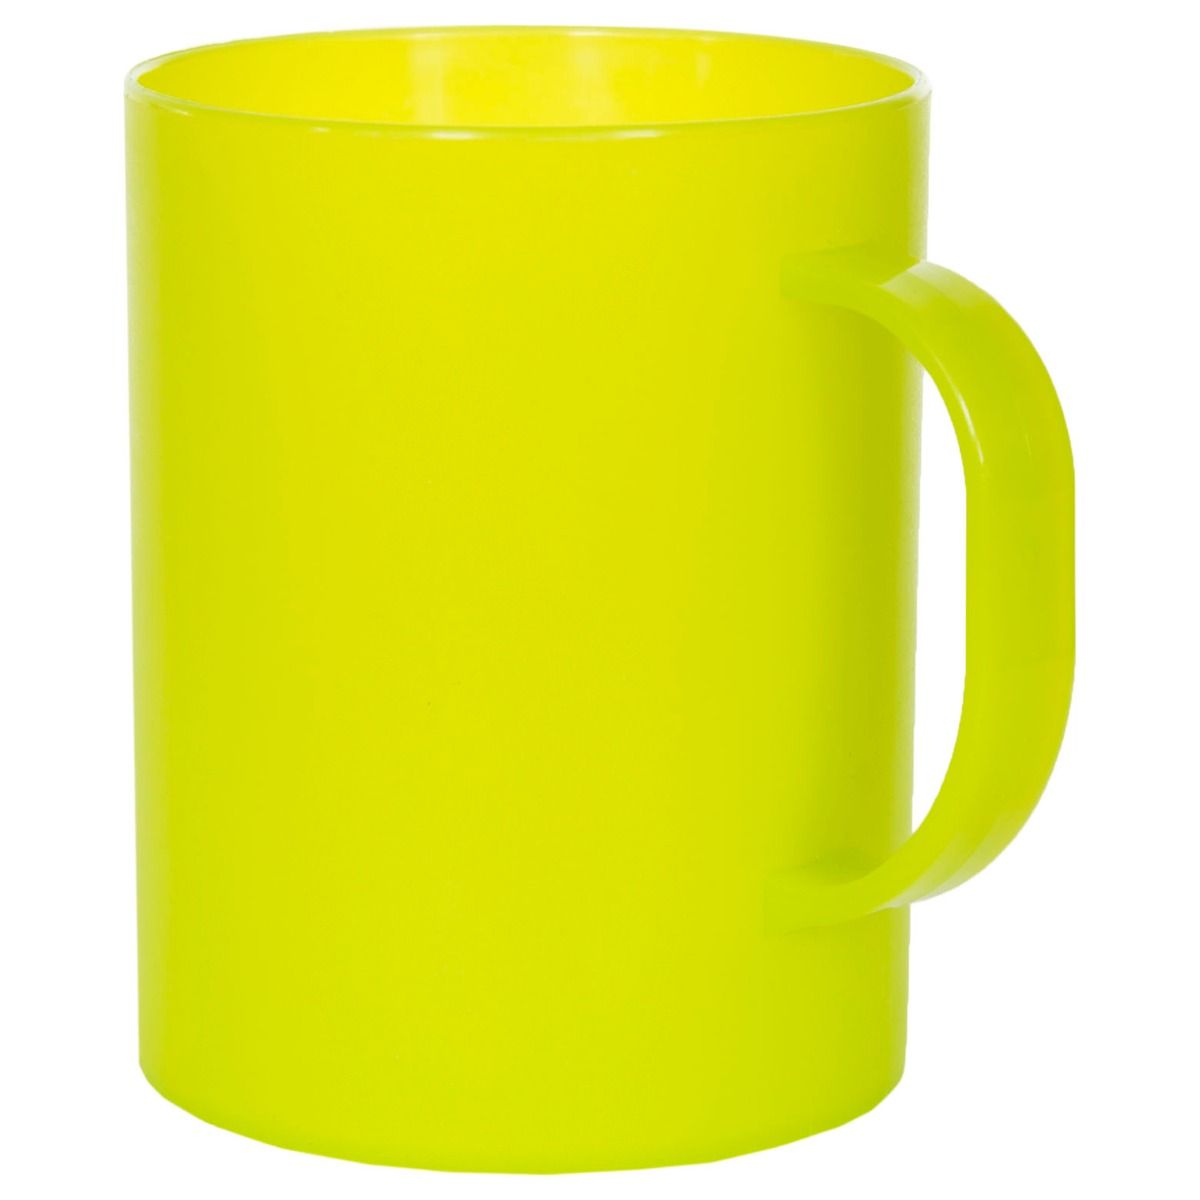 Pour Plastic 400ml Cup